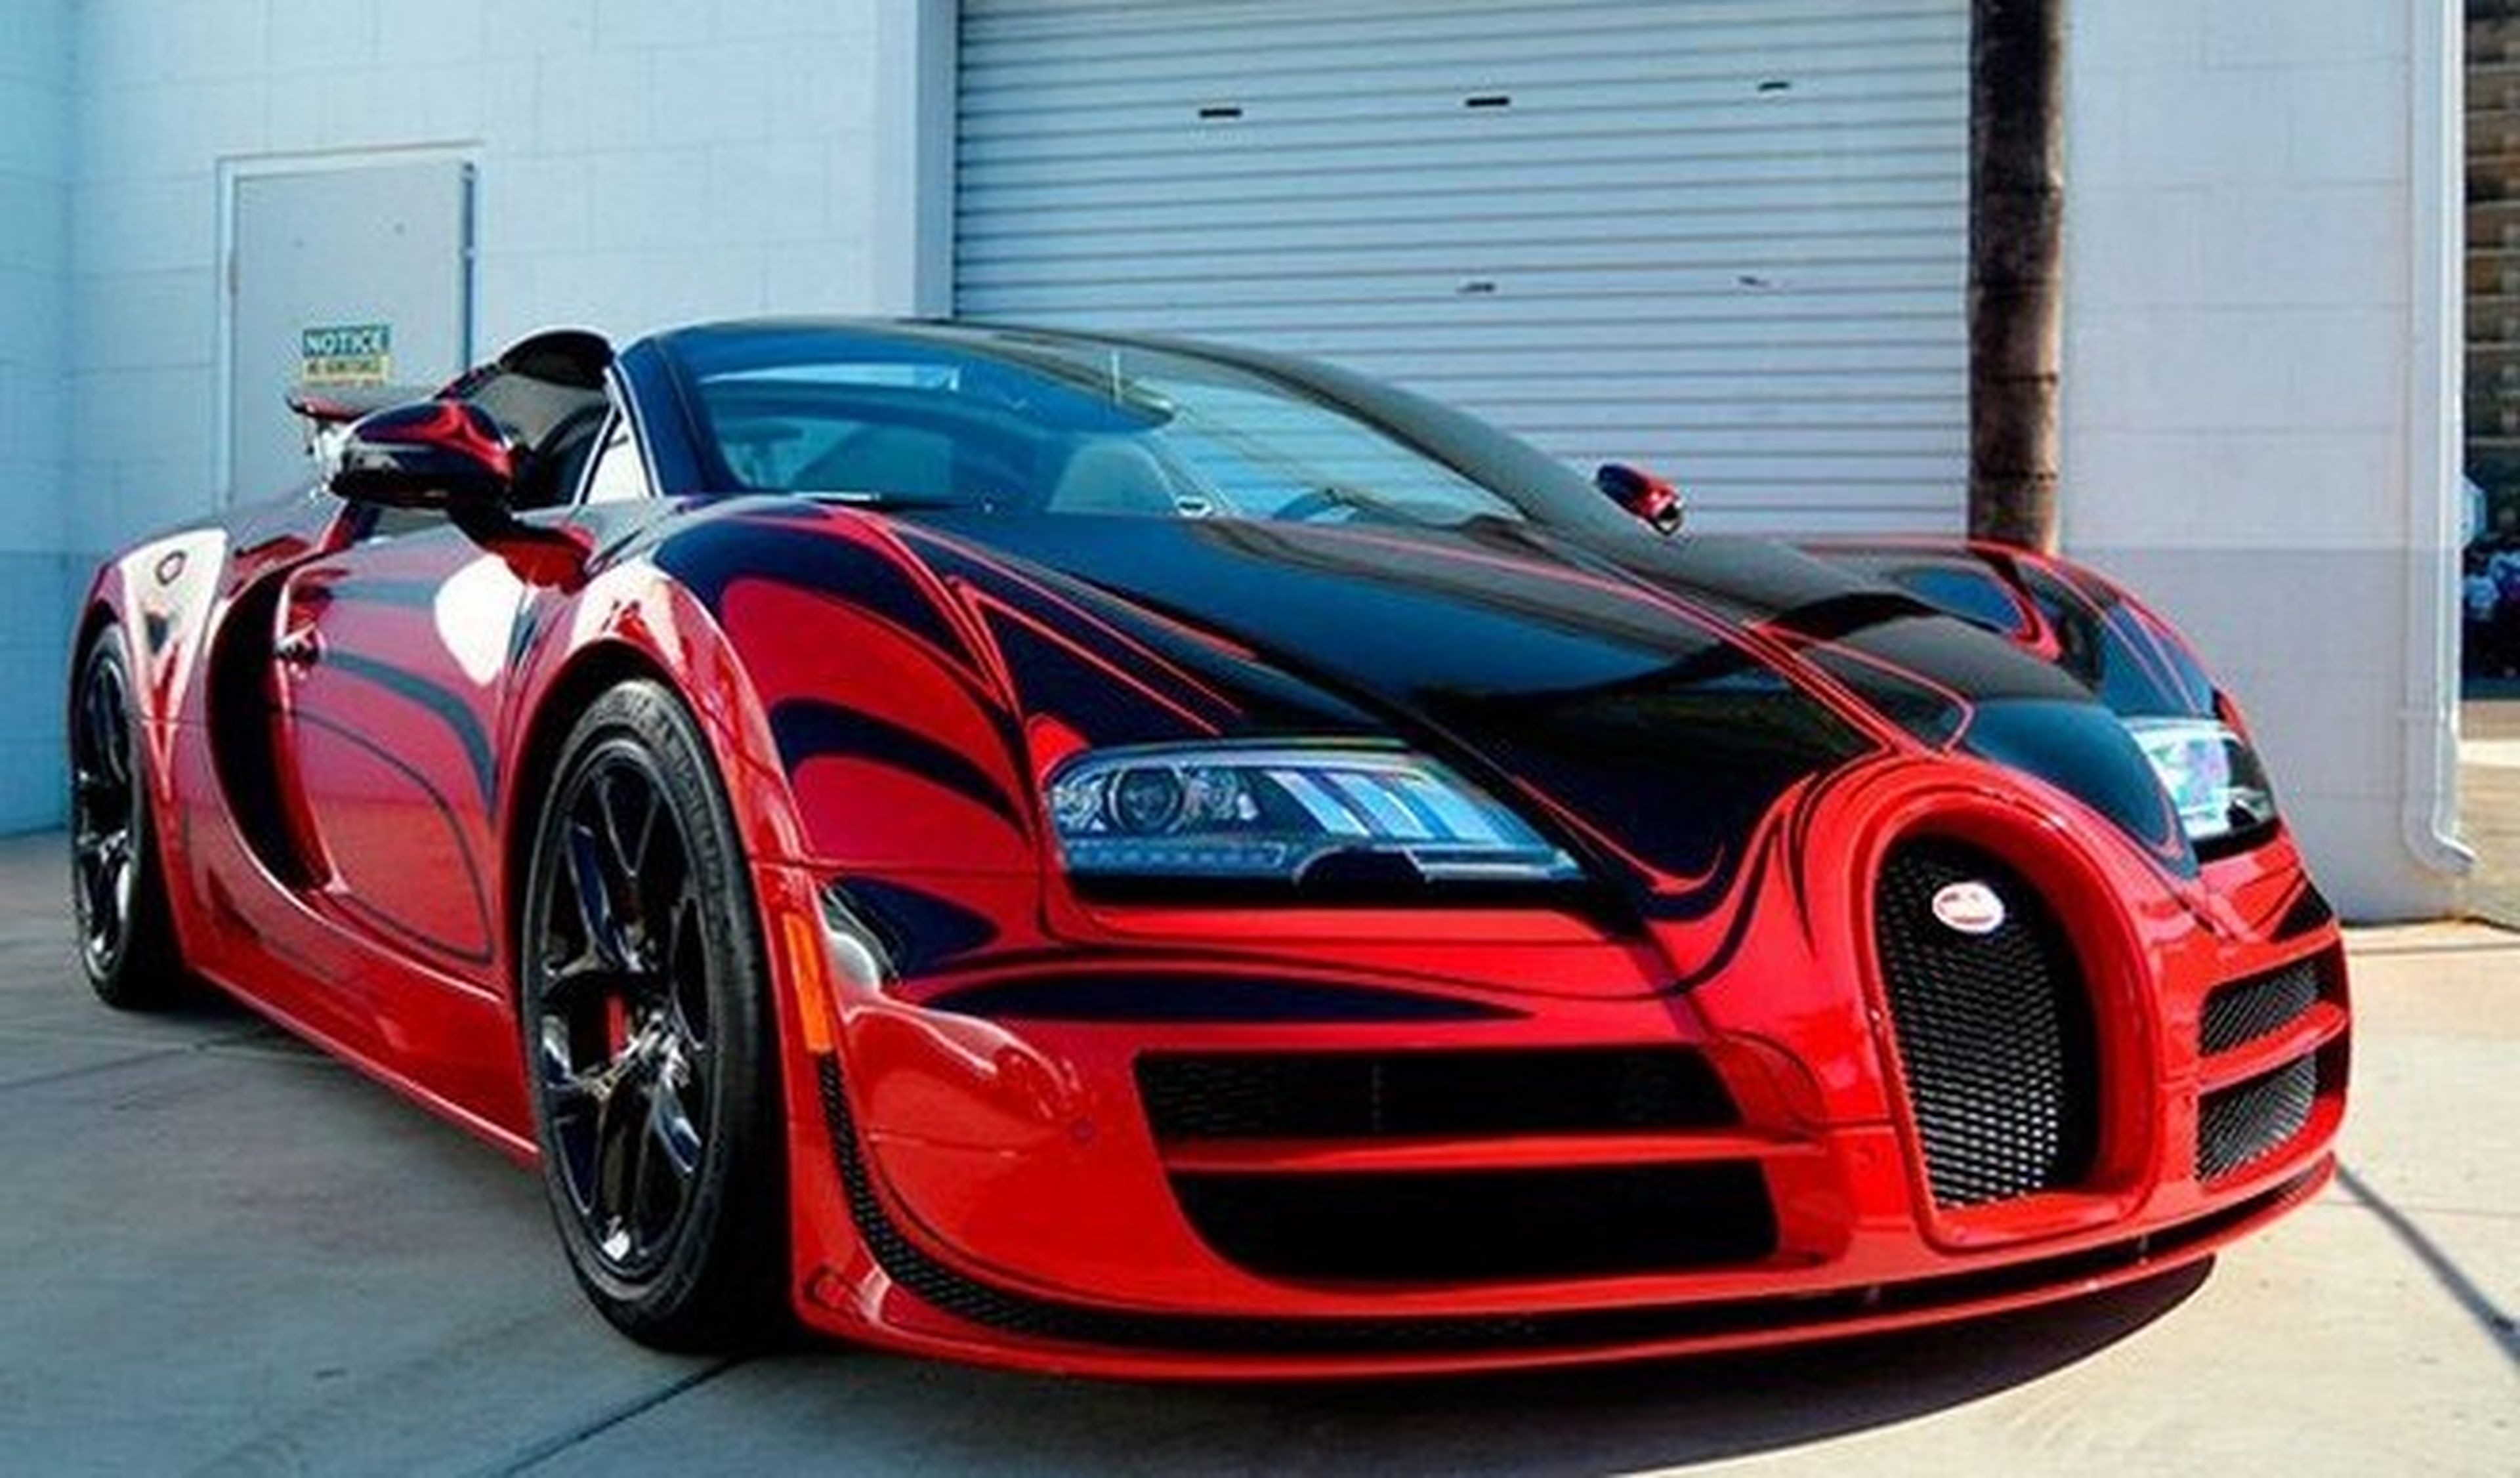 Vídeo: Un Bugatti Veyron a más de 370 km/h